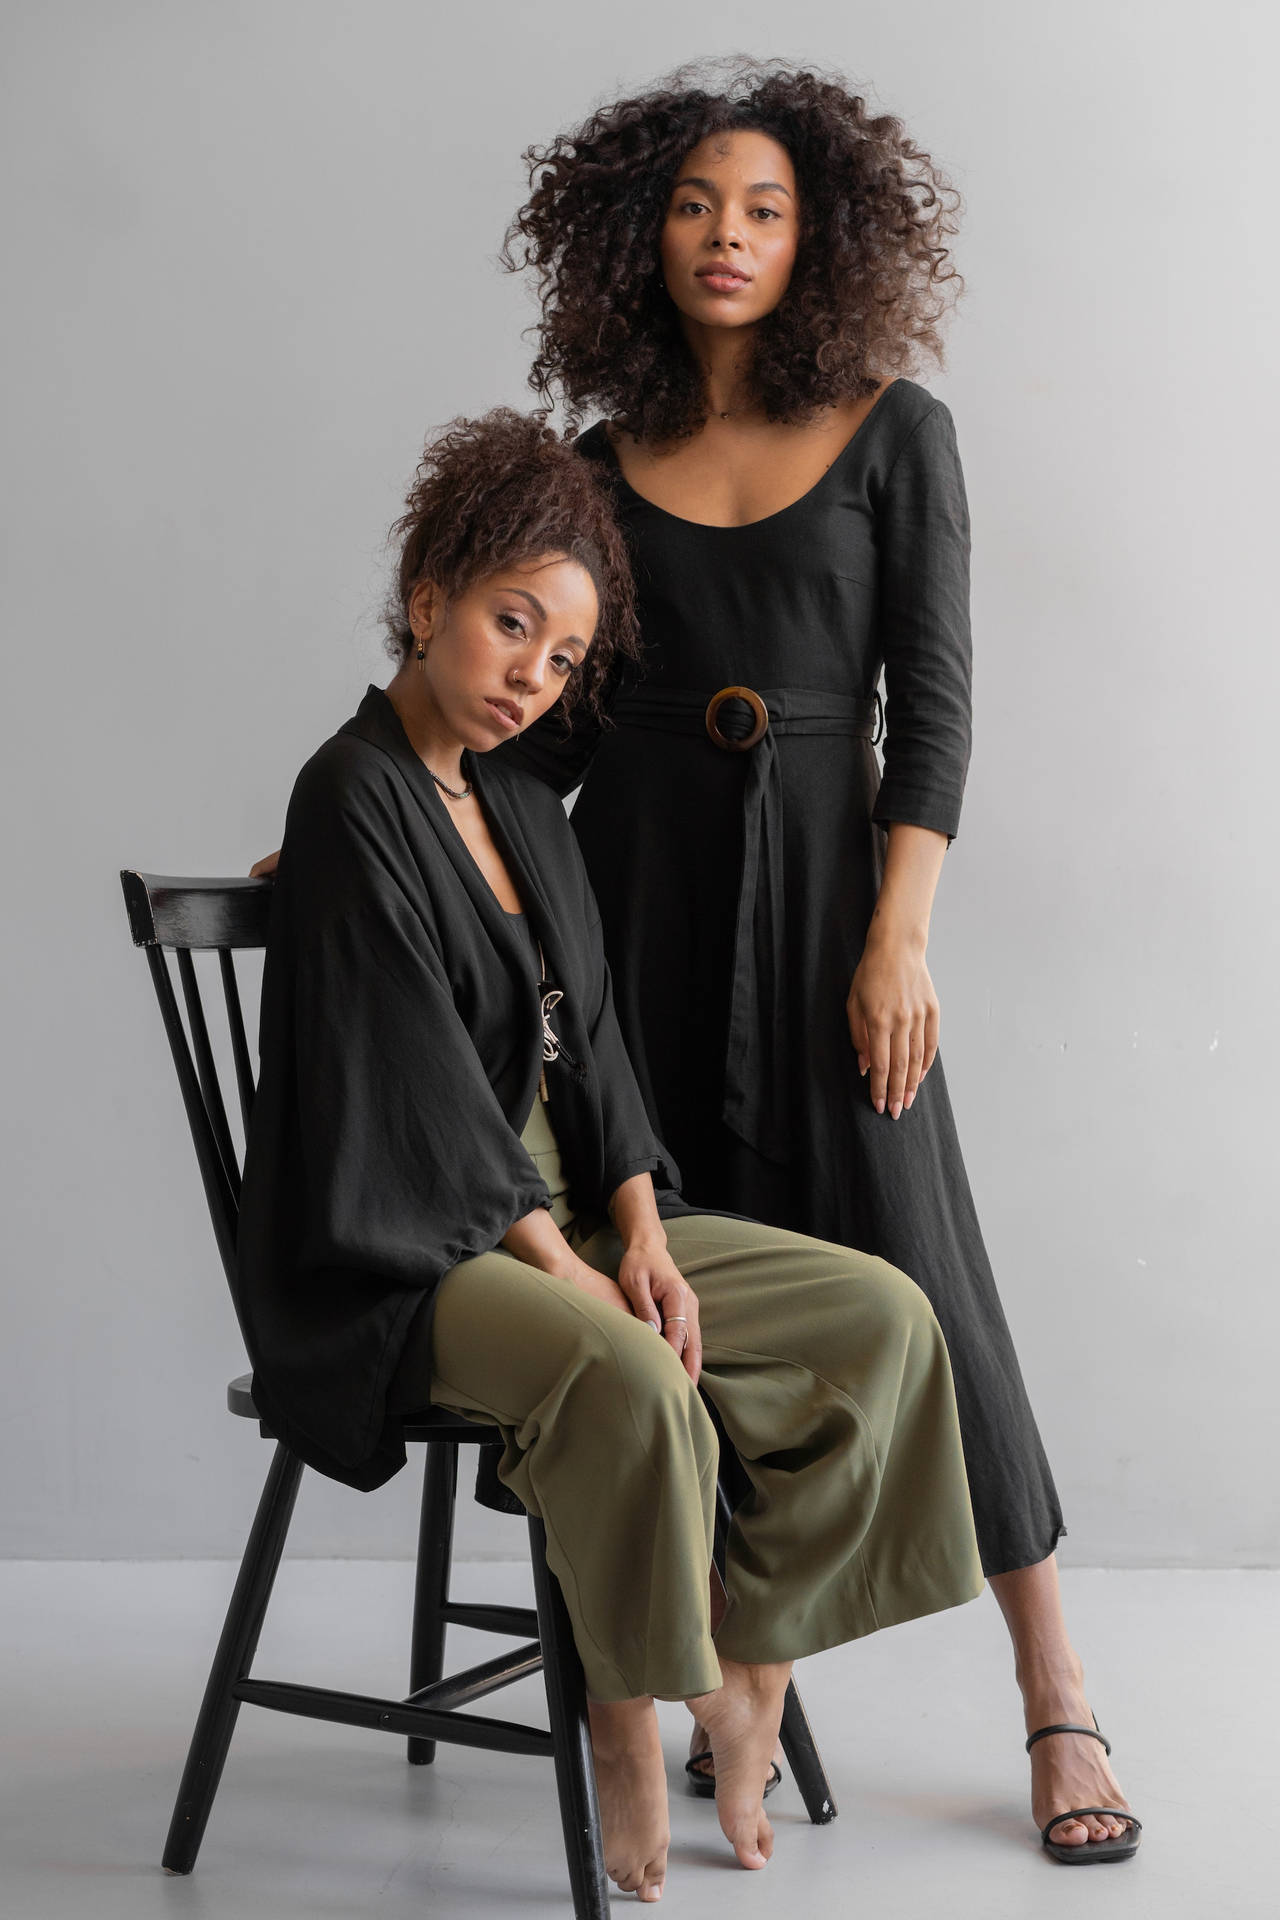 Zweisexy Schwarze Frauen, Die Auf Einem Stuhl Posieren Wallpaper